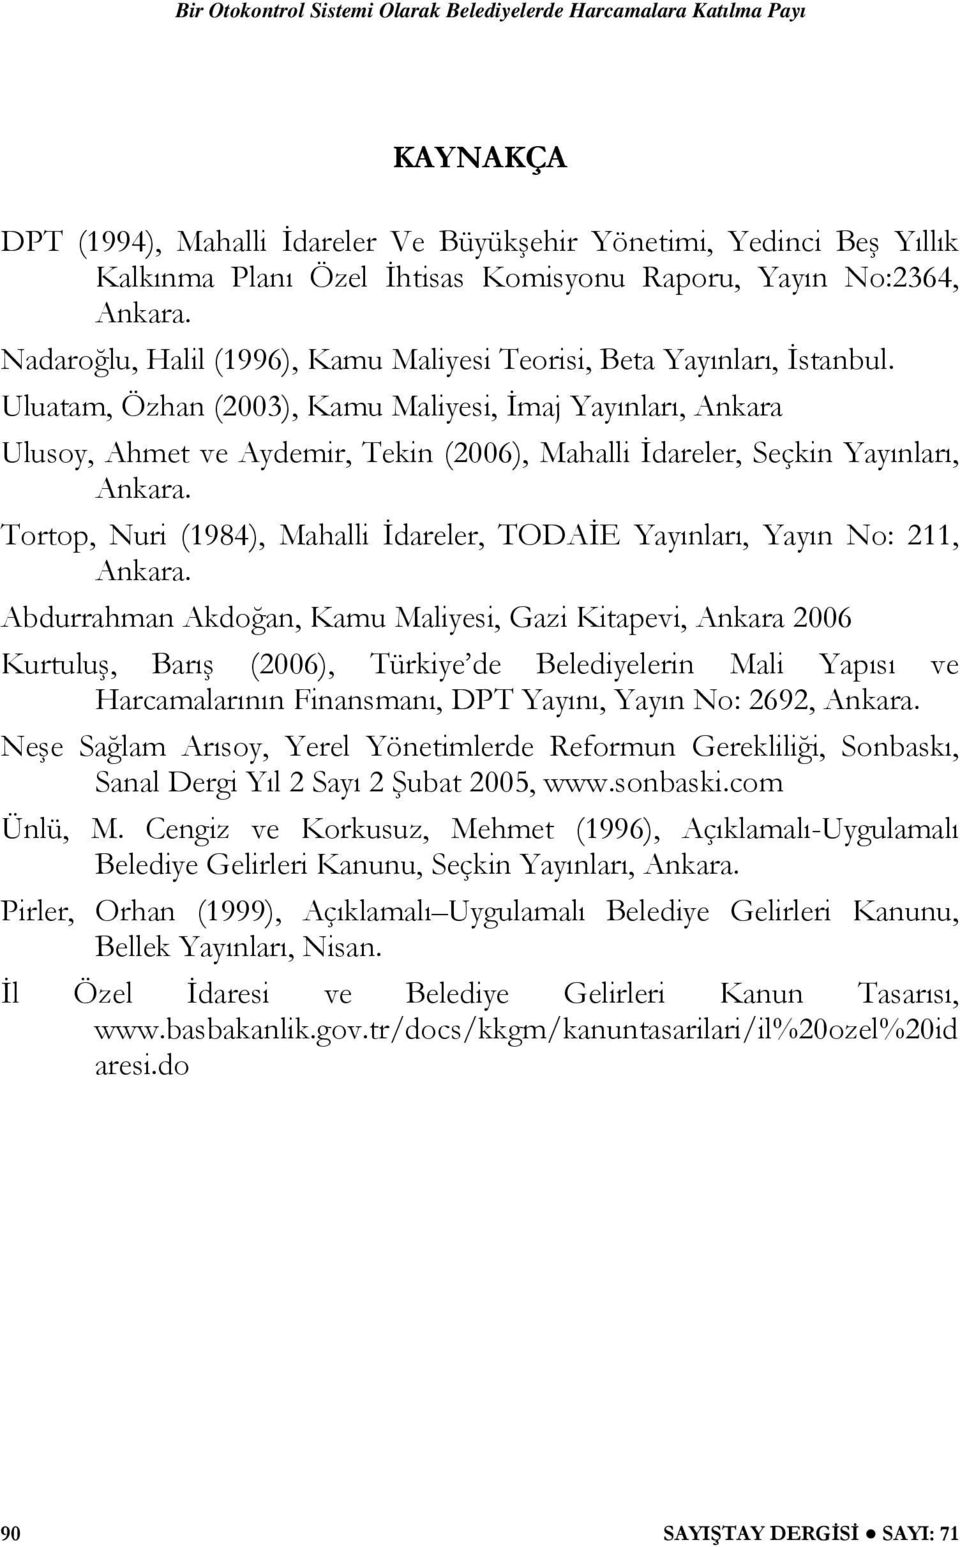 Uluatam, Özhan (2003), Kamu Maliyesi, İmaj Yayınları, Ankara Ulusoy, Ahmet ve Aydemir, Tekin (2006), Mahalli İdareler, Seçkin Yayınları, Ankara.